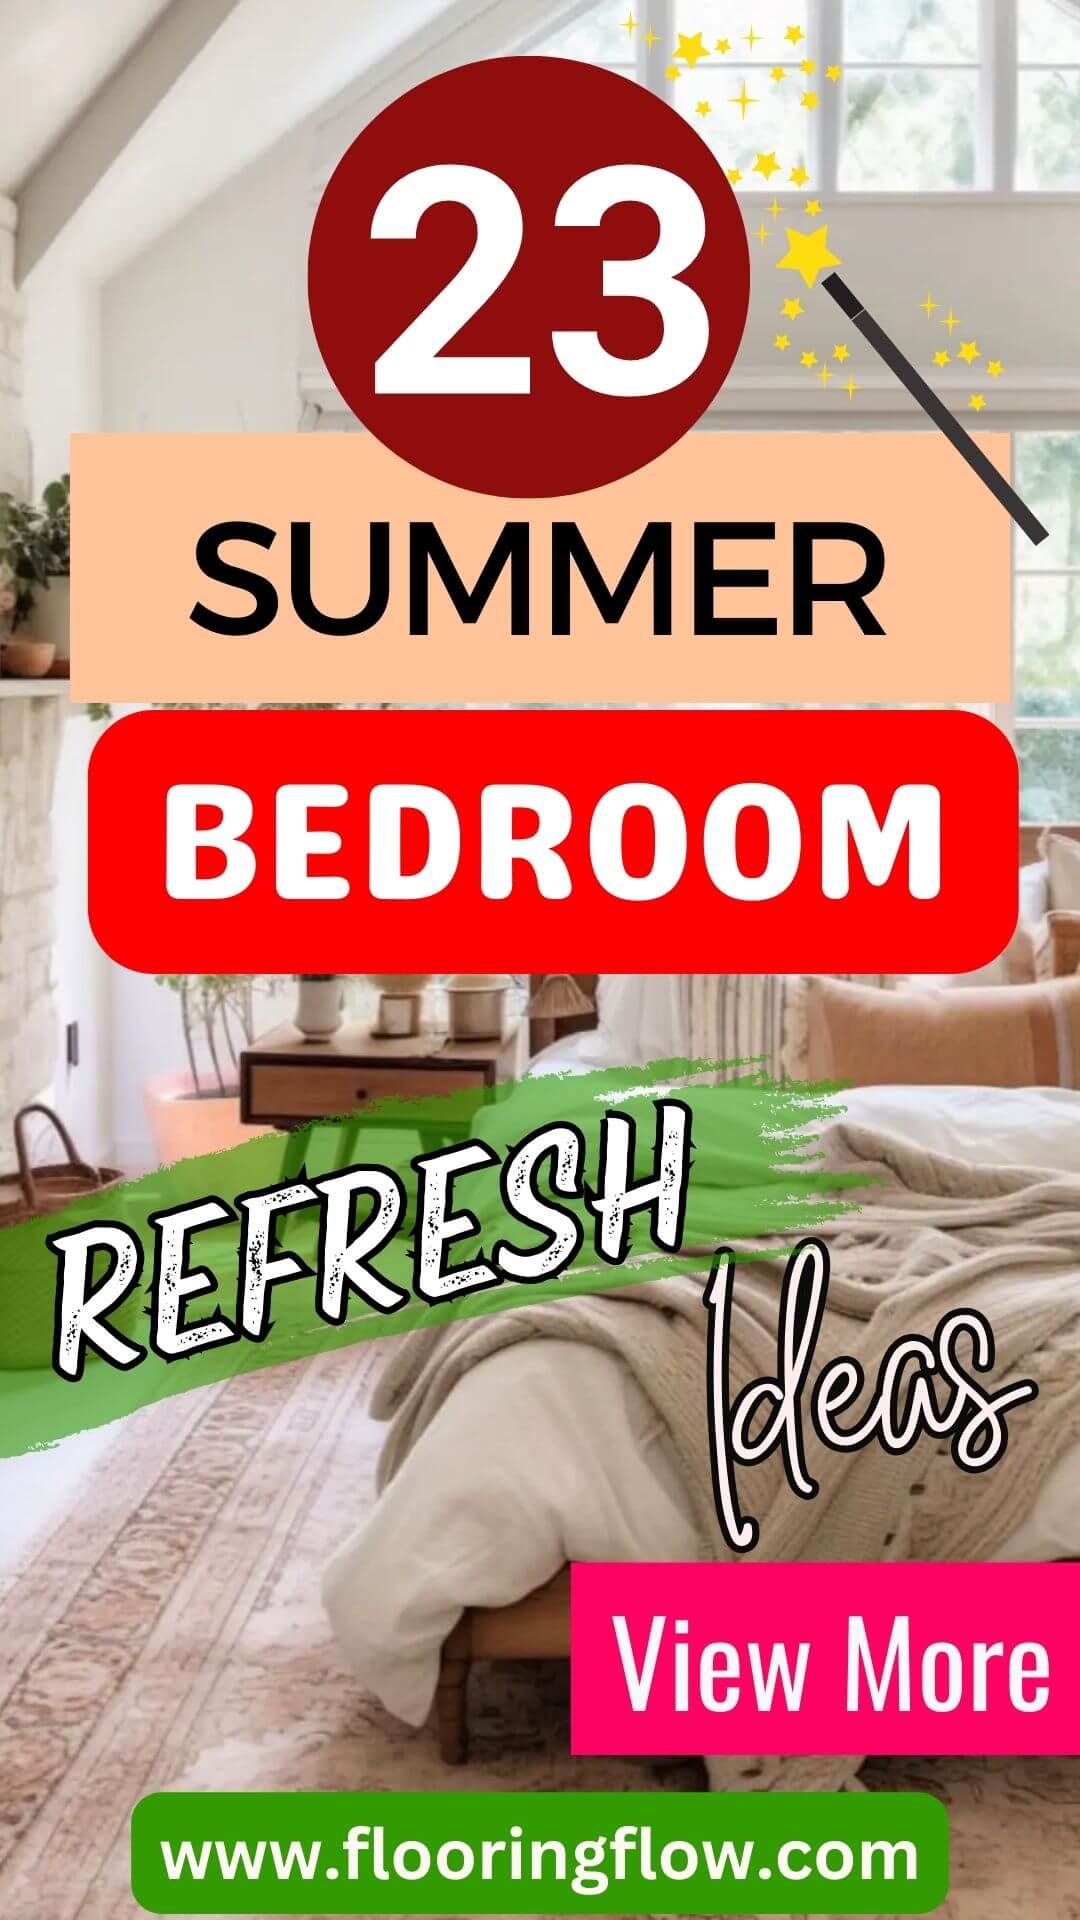 Summer Bedroom Refresh Ideas